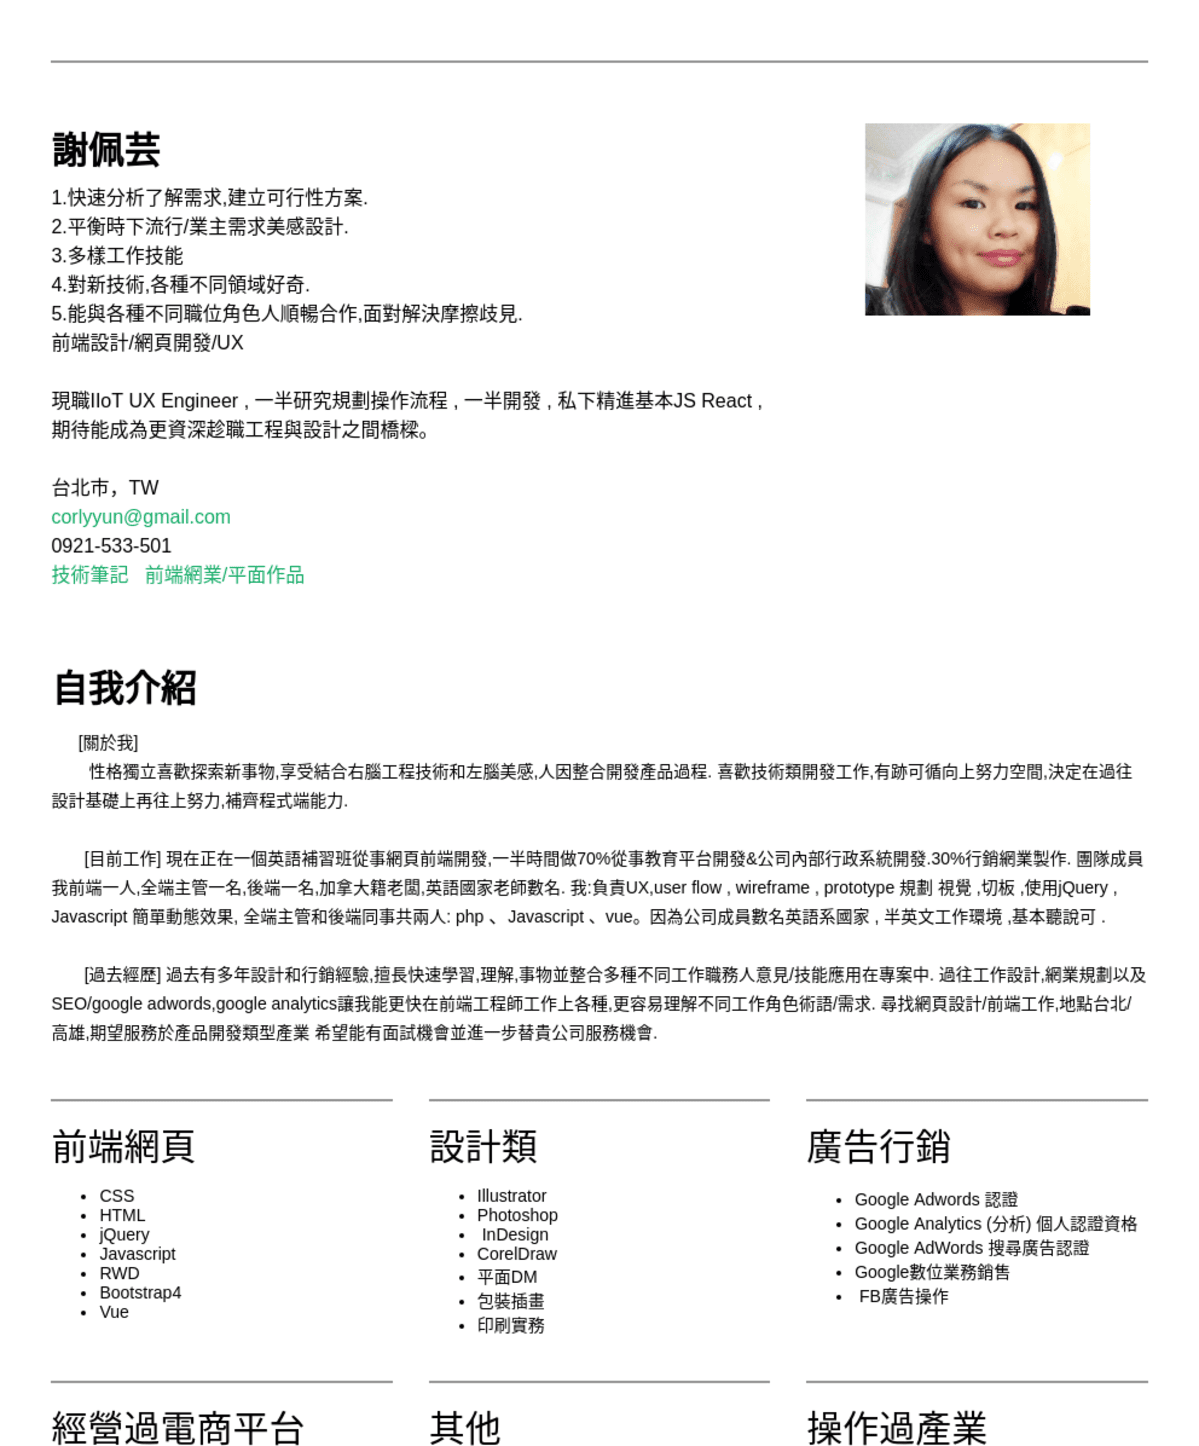 謝佩芸, 前端網頁工程師@WHYGO外國語文中心